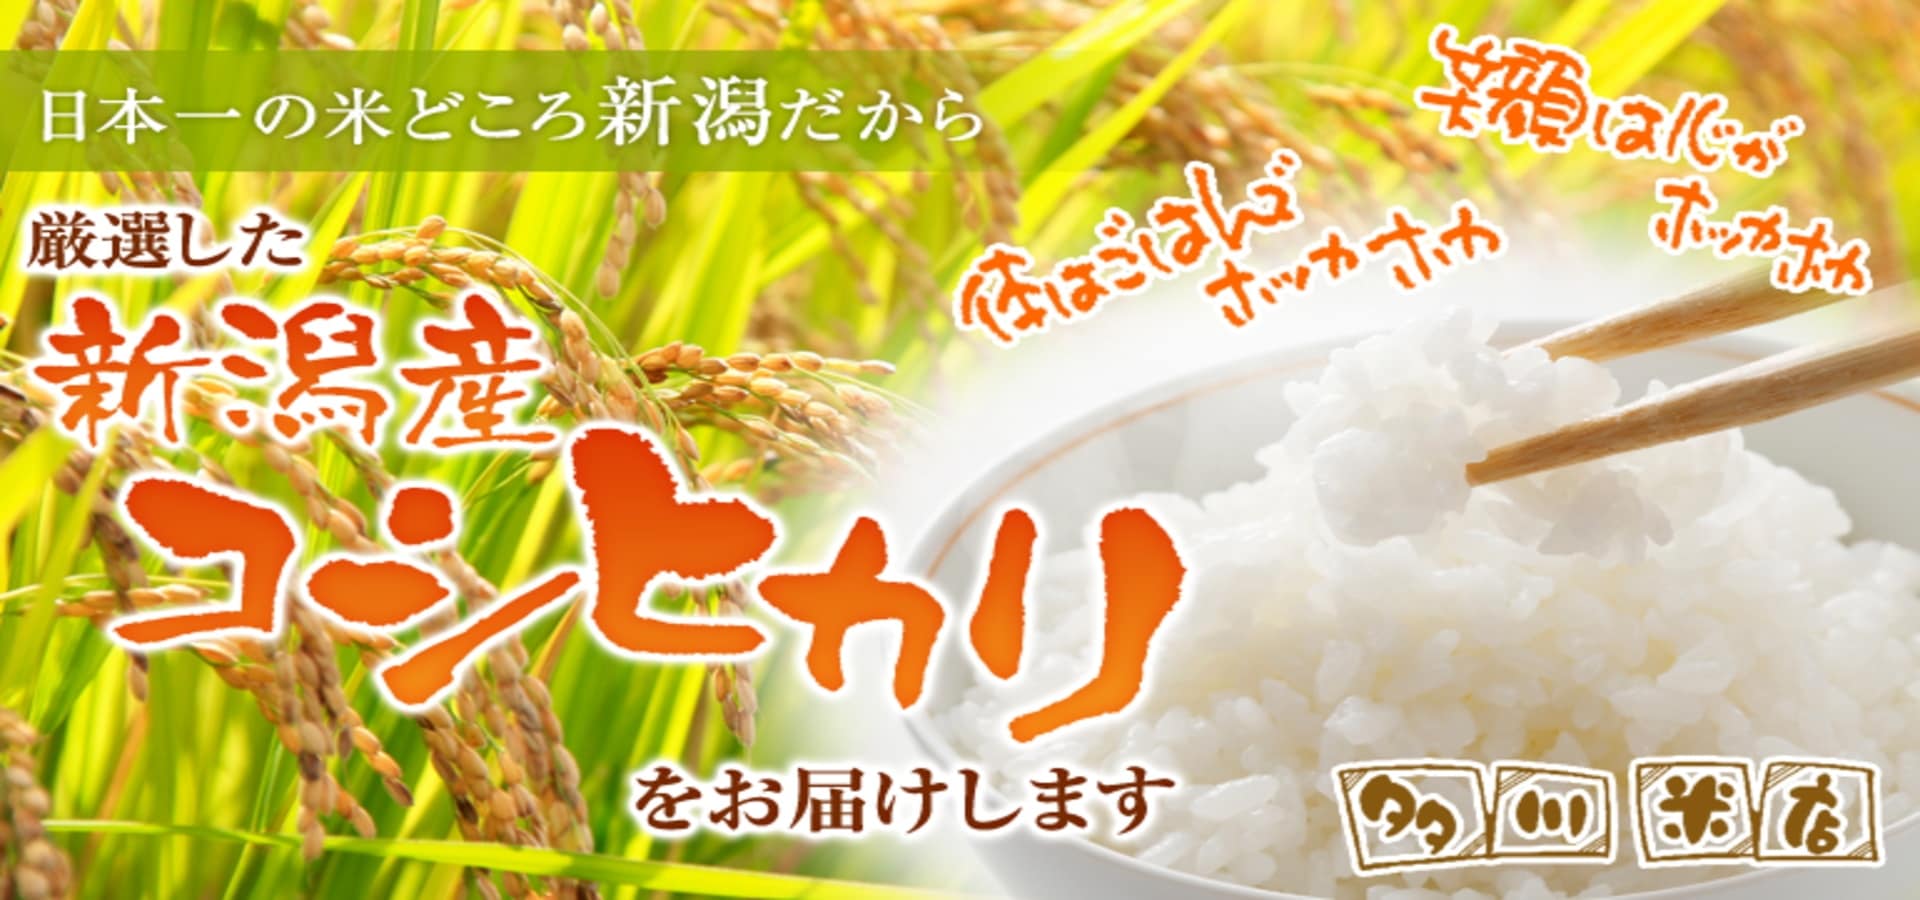 新潟県産コシヒカリ白米